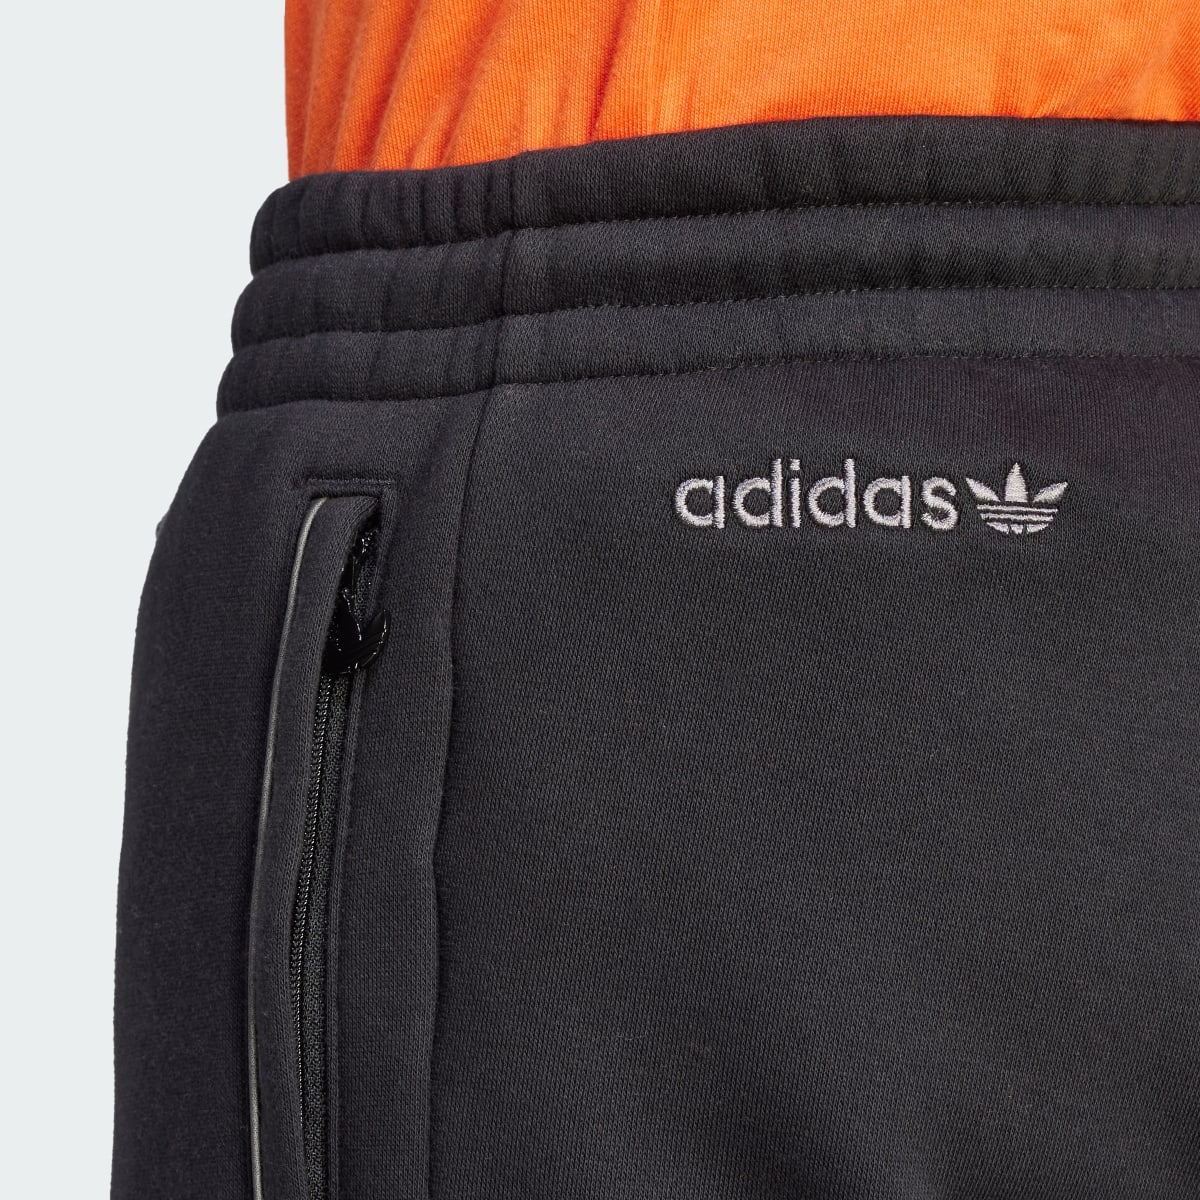 Adidas Spodnie dresowe Adicolor Seasonal Reflective. 6